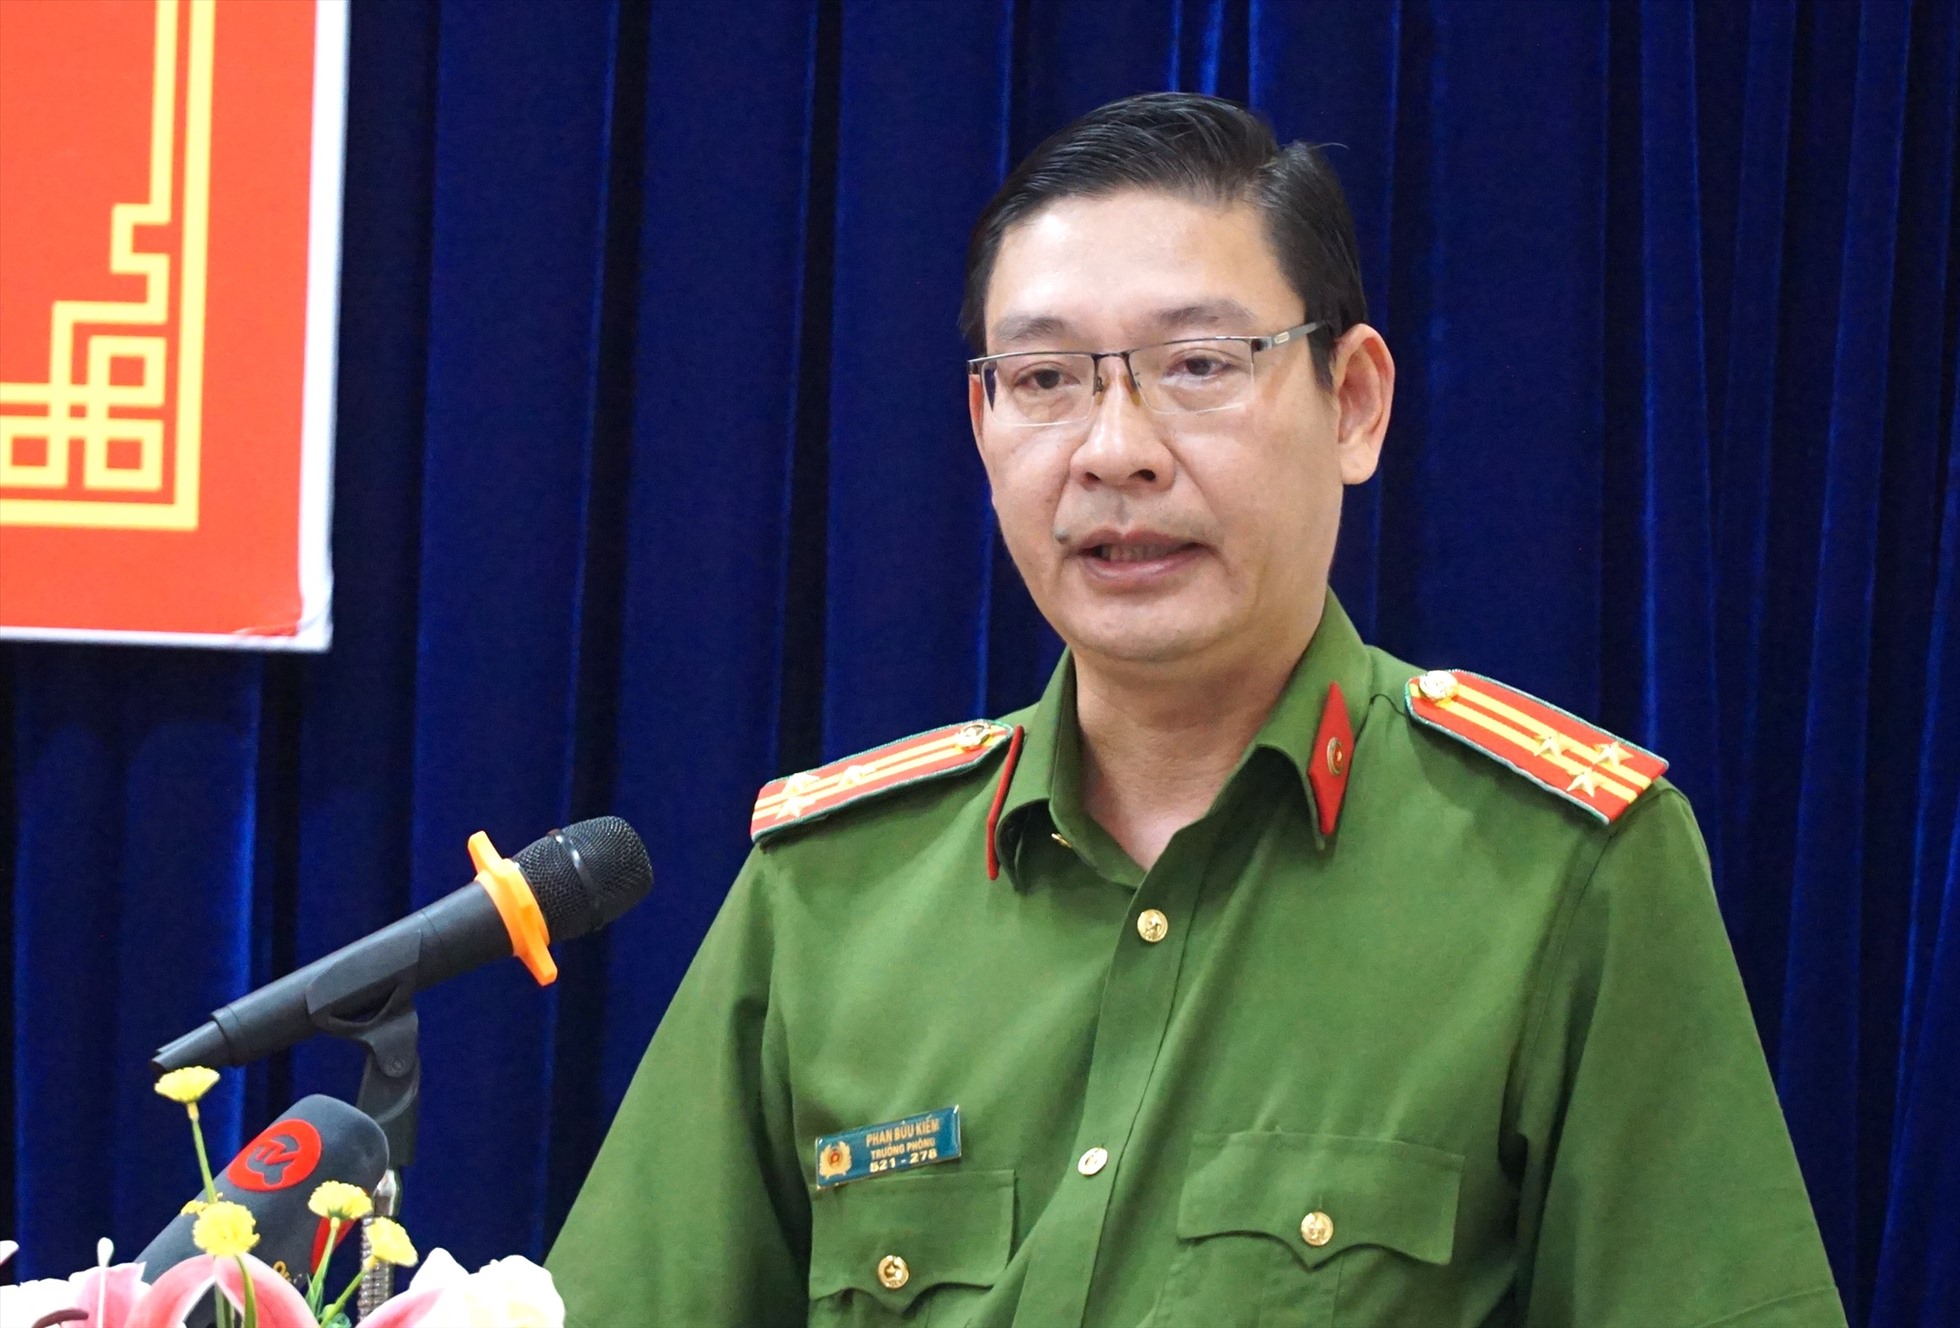 Thượng tá Phan Bửu Kiếm, Trưởng phòng Cảnh sát Hình sự, Công an tỉnh Cà Mau trả lời báo chí  xung quanh vụ ngư phủ bị hành hạ trên biển. Ảnh: Nhật Hồ